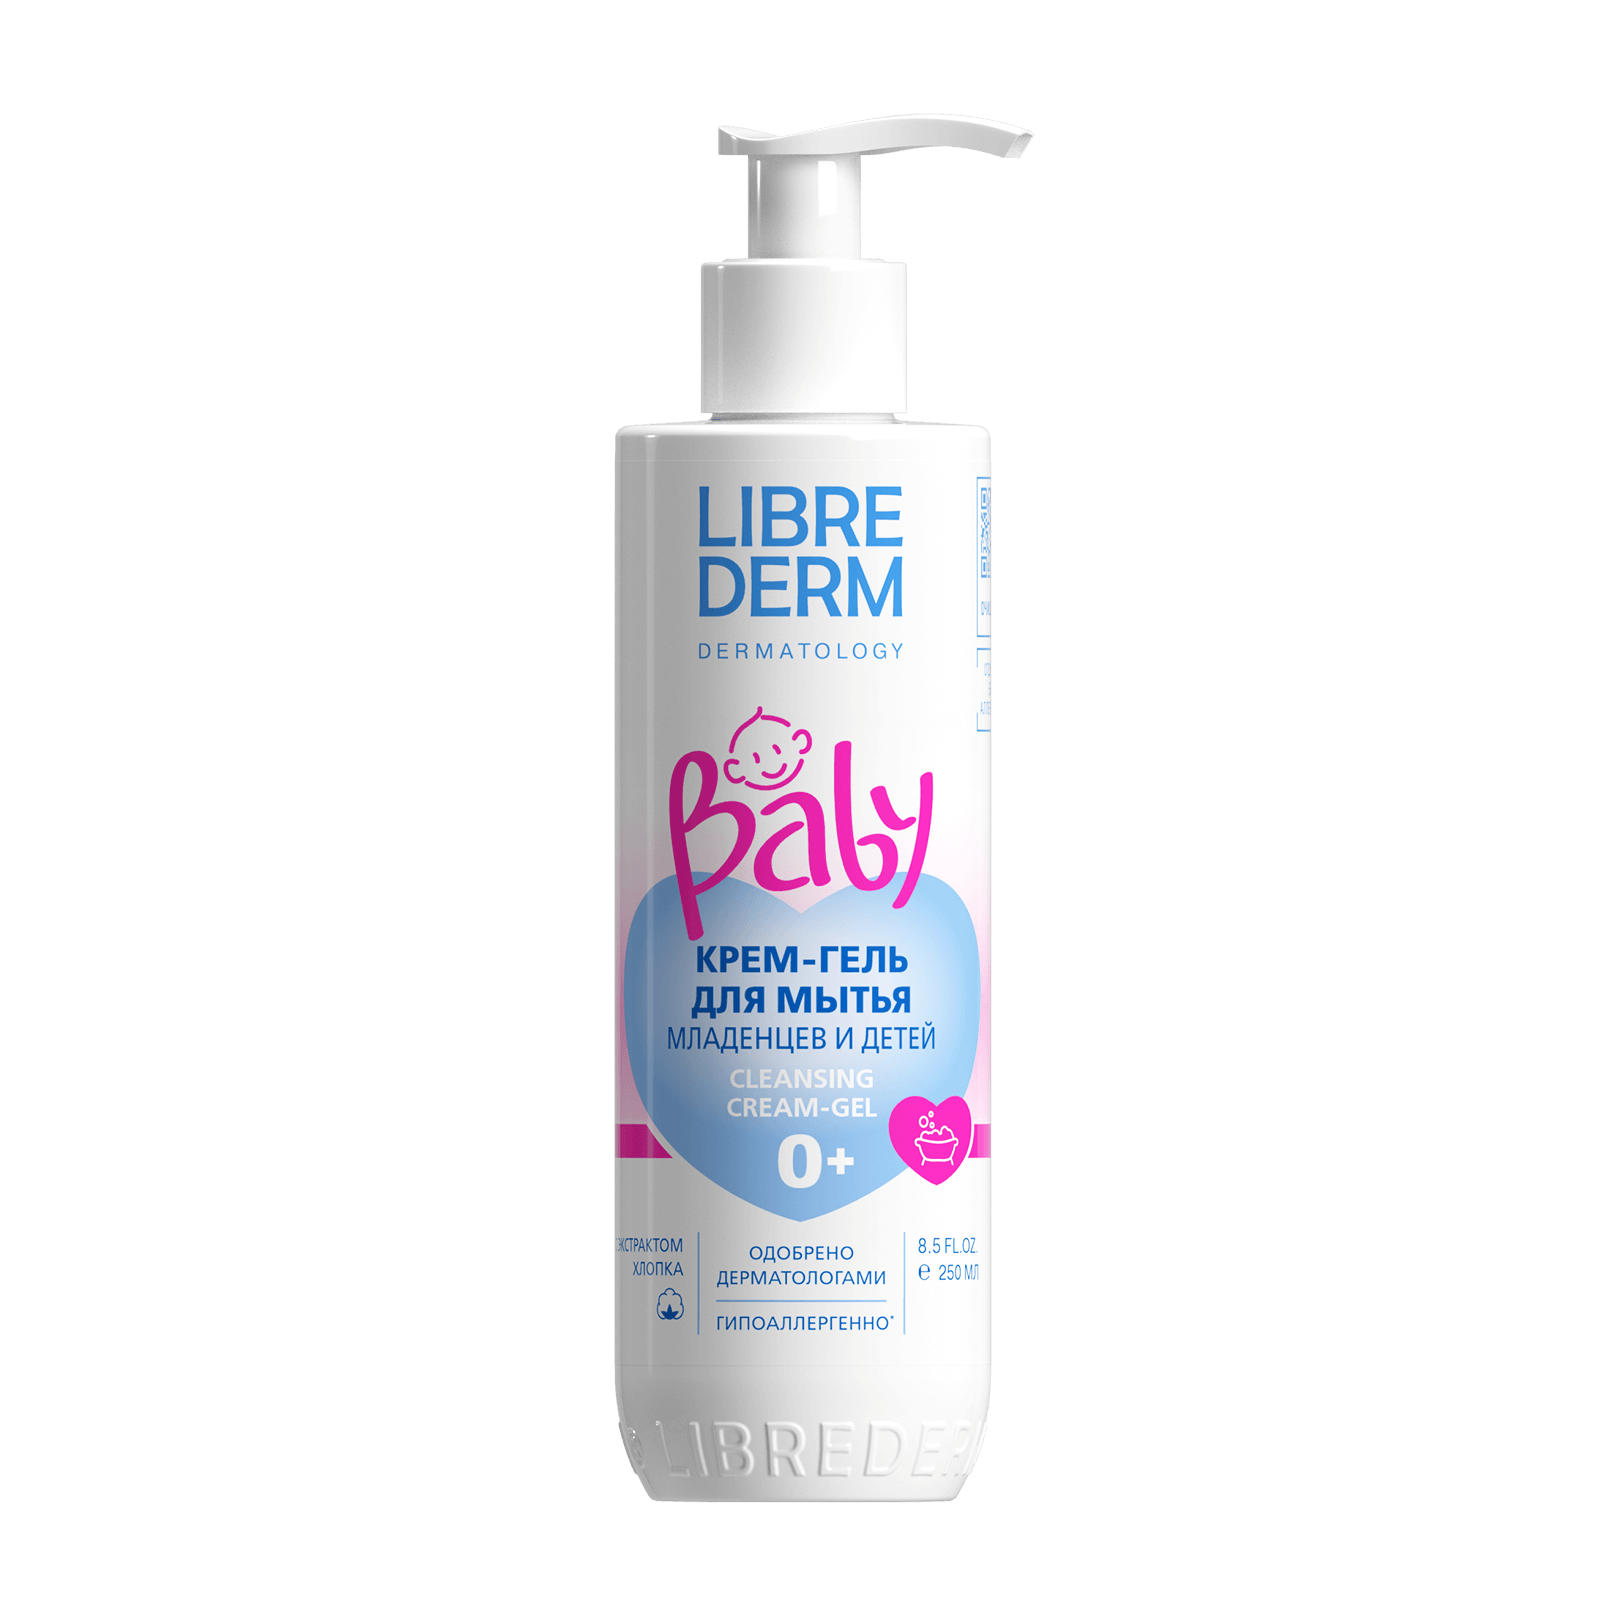 Librederm Baby, крем-гель для мытья новорожденных младенцев и детей 250 мл librederm шампунь без слез для новорожденных младенцев и детей baby 250 мл